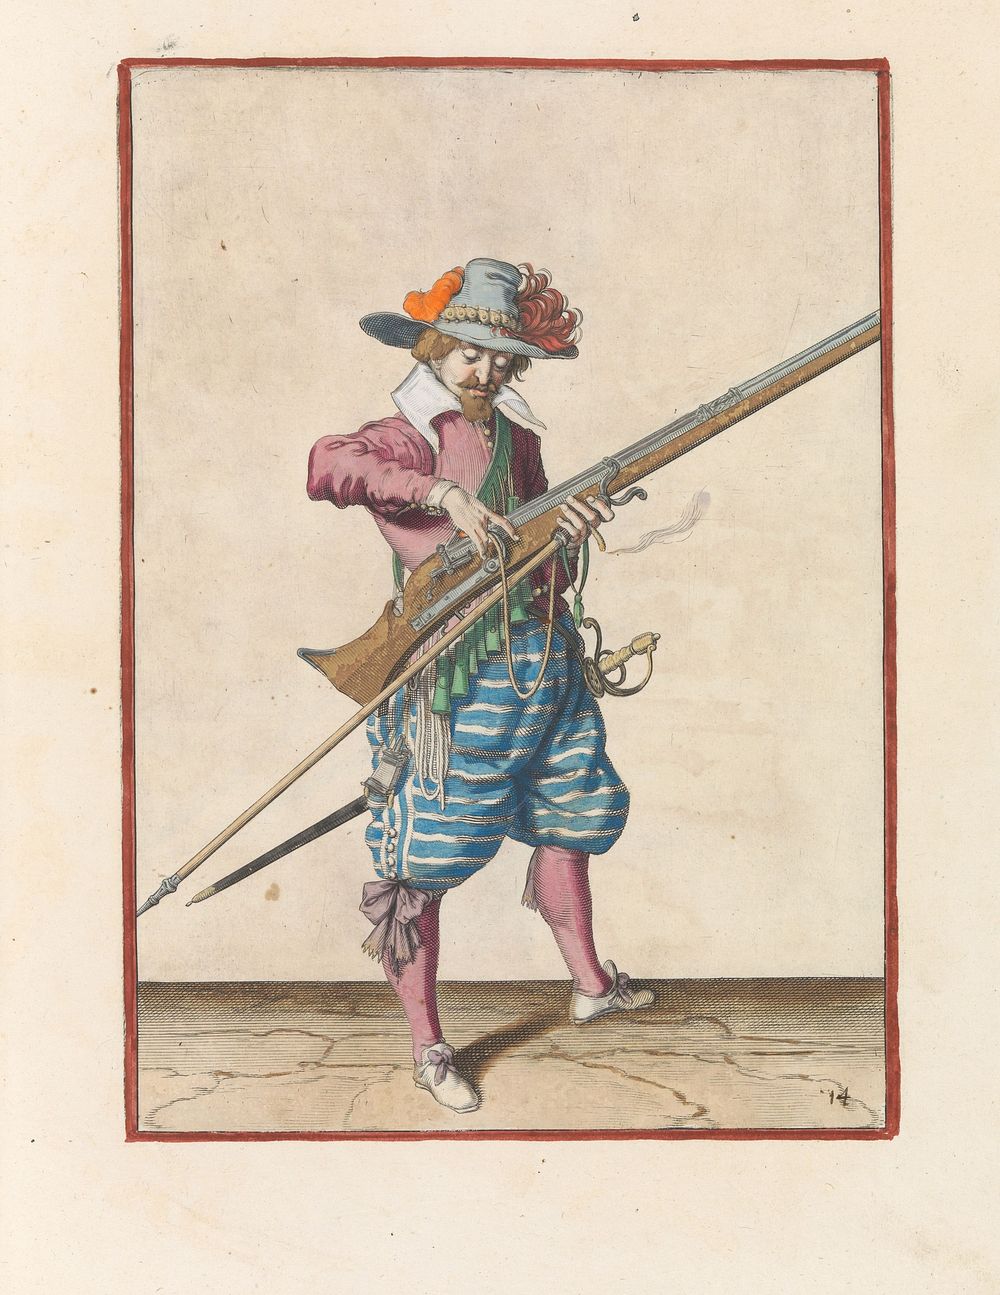 Soldaat die zijn lont van de haan van zijn musket losmaakt (c. 1597 - 1607) by Jacques de Gheyn II and Jacques de Gheyn II